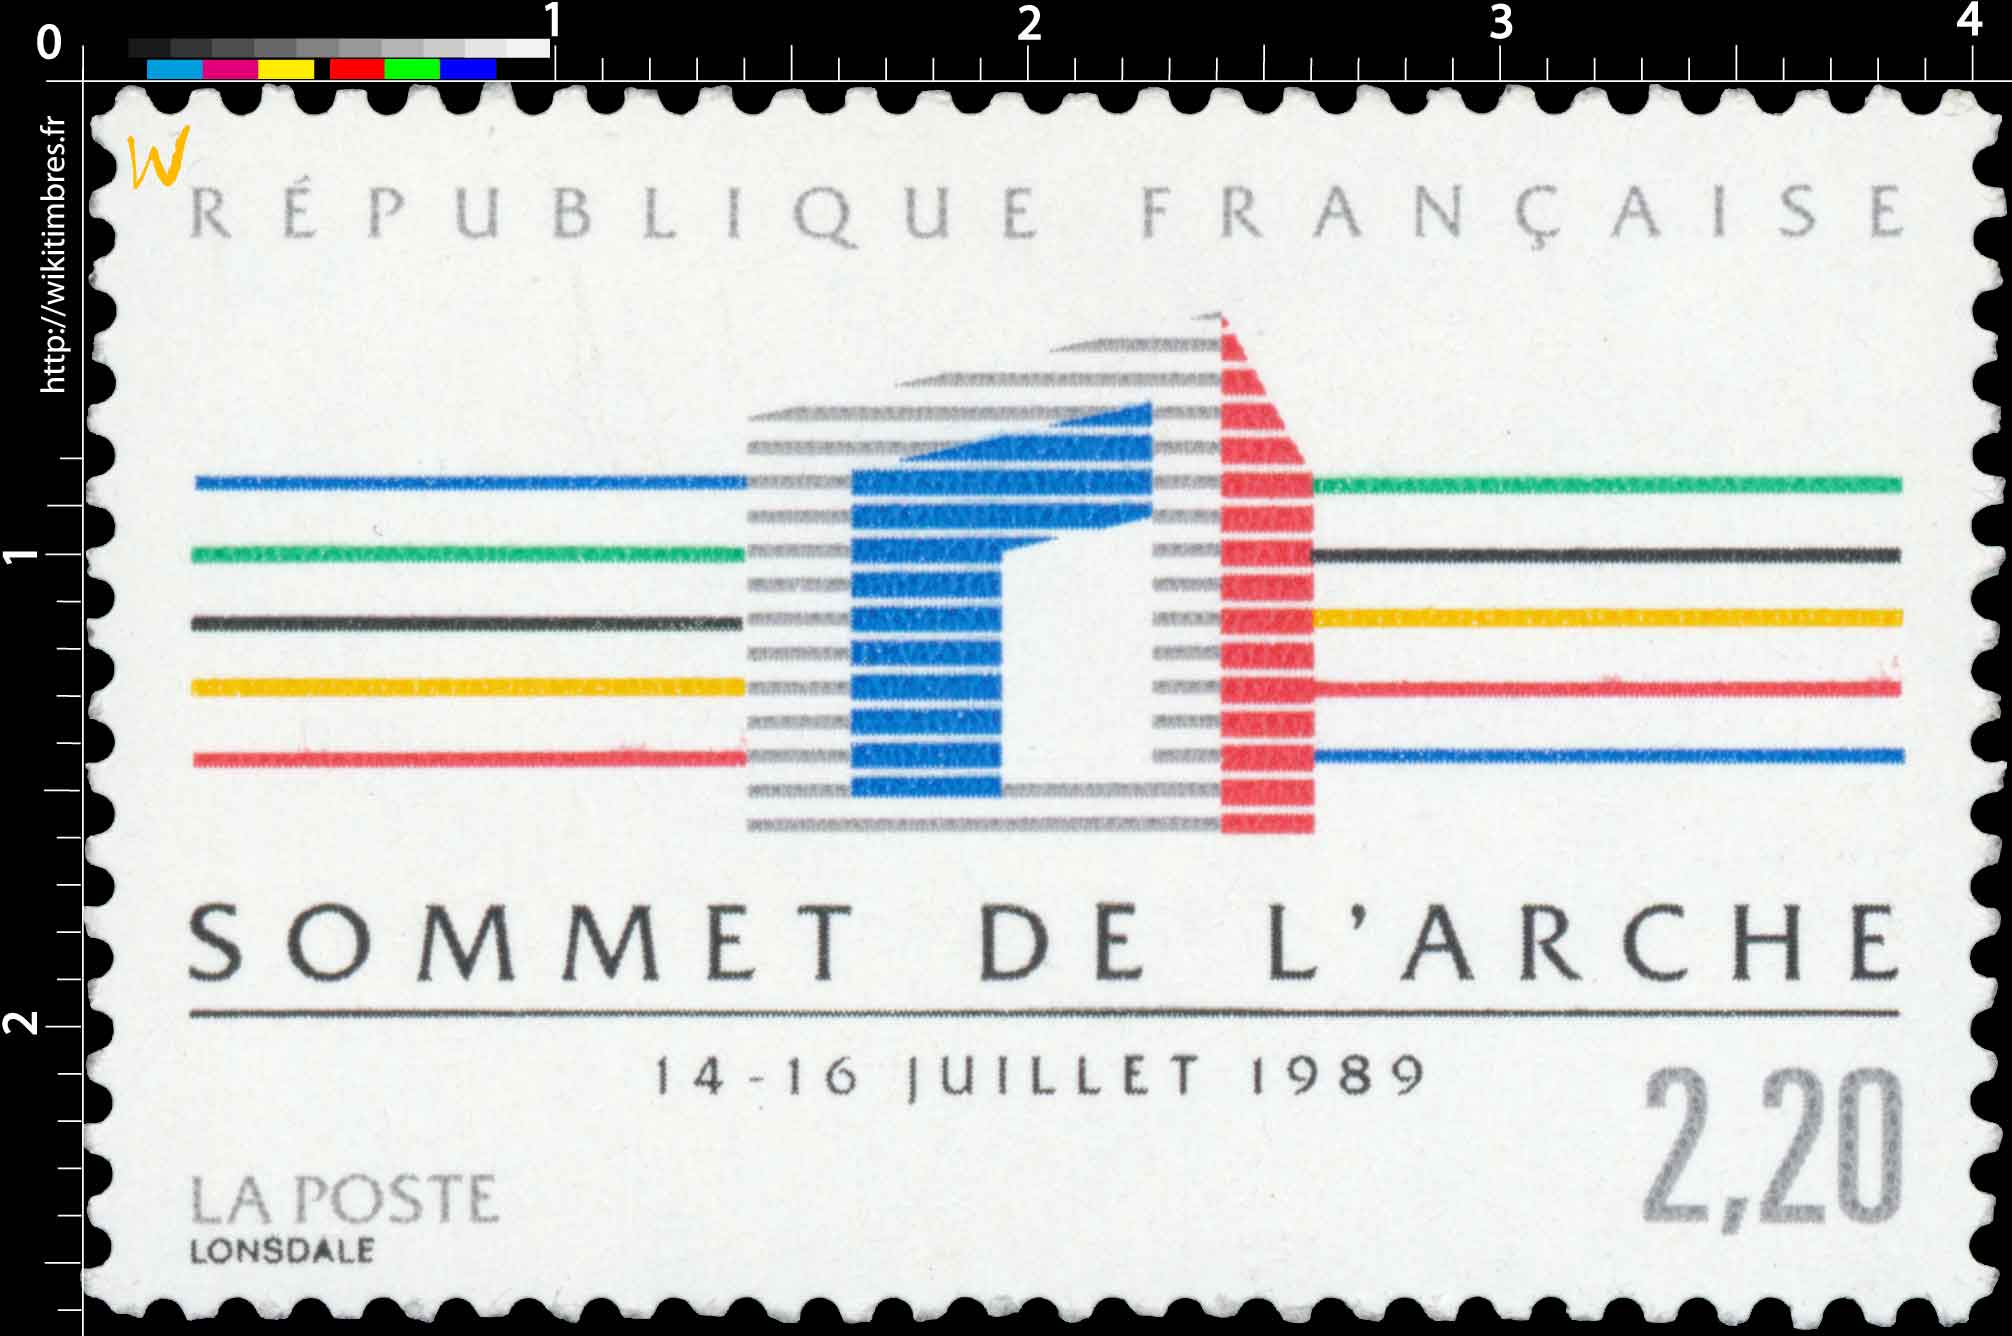 SOMMET DE L'ARCHE 14 -16 JUILLET 1989